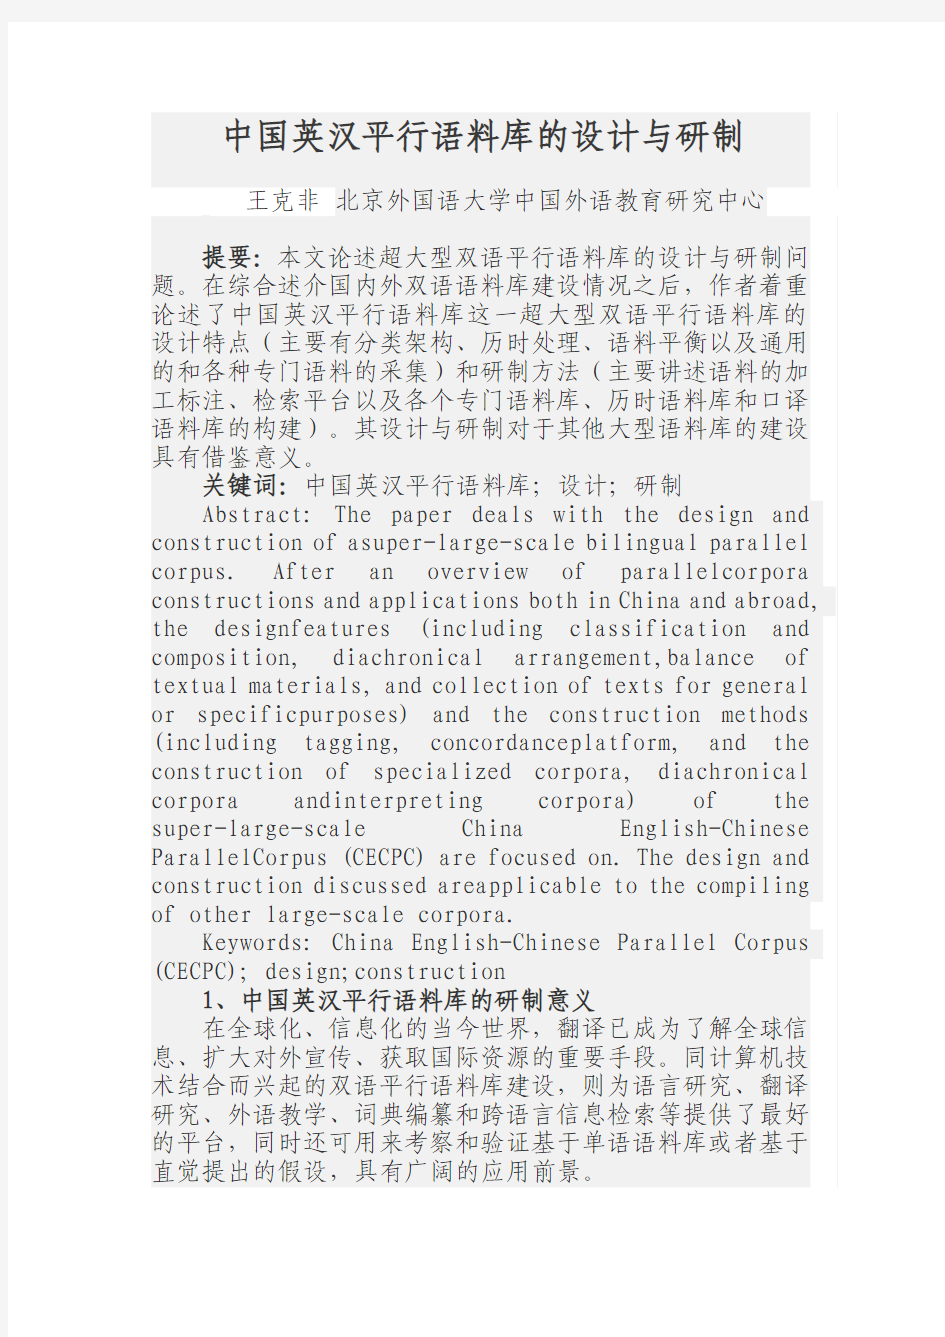 中国英汉平行语料库的设计与研制